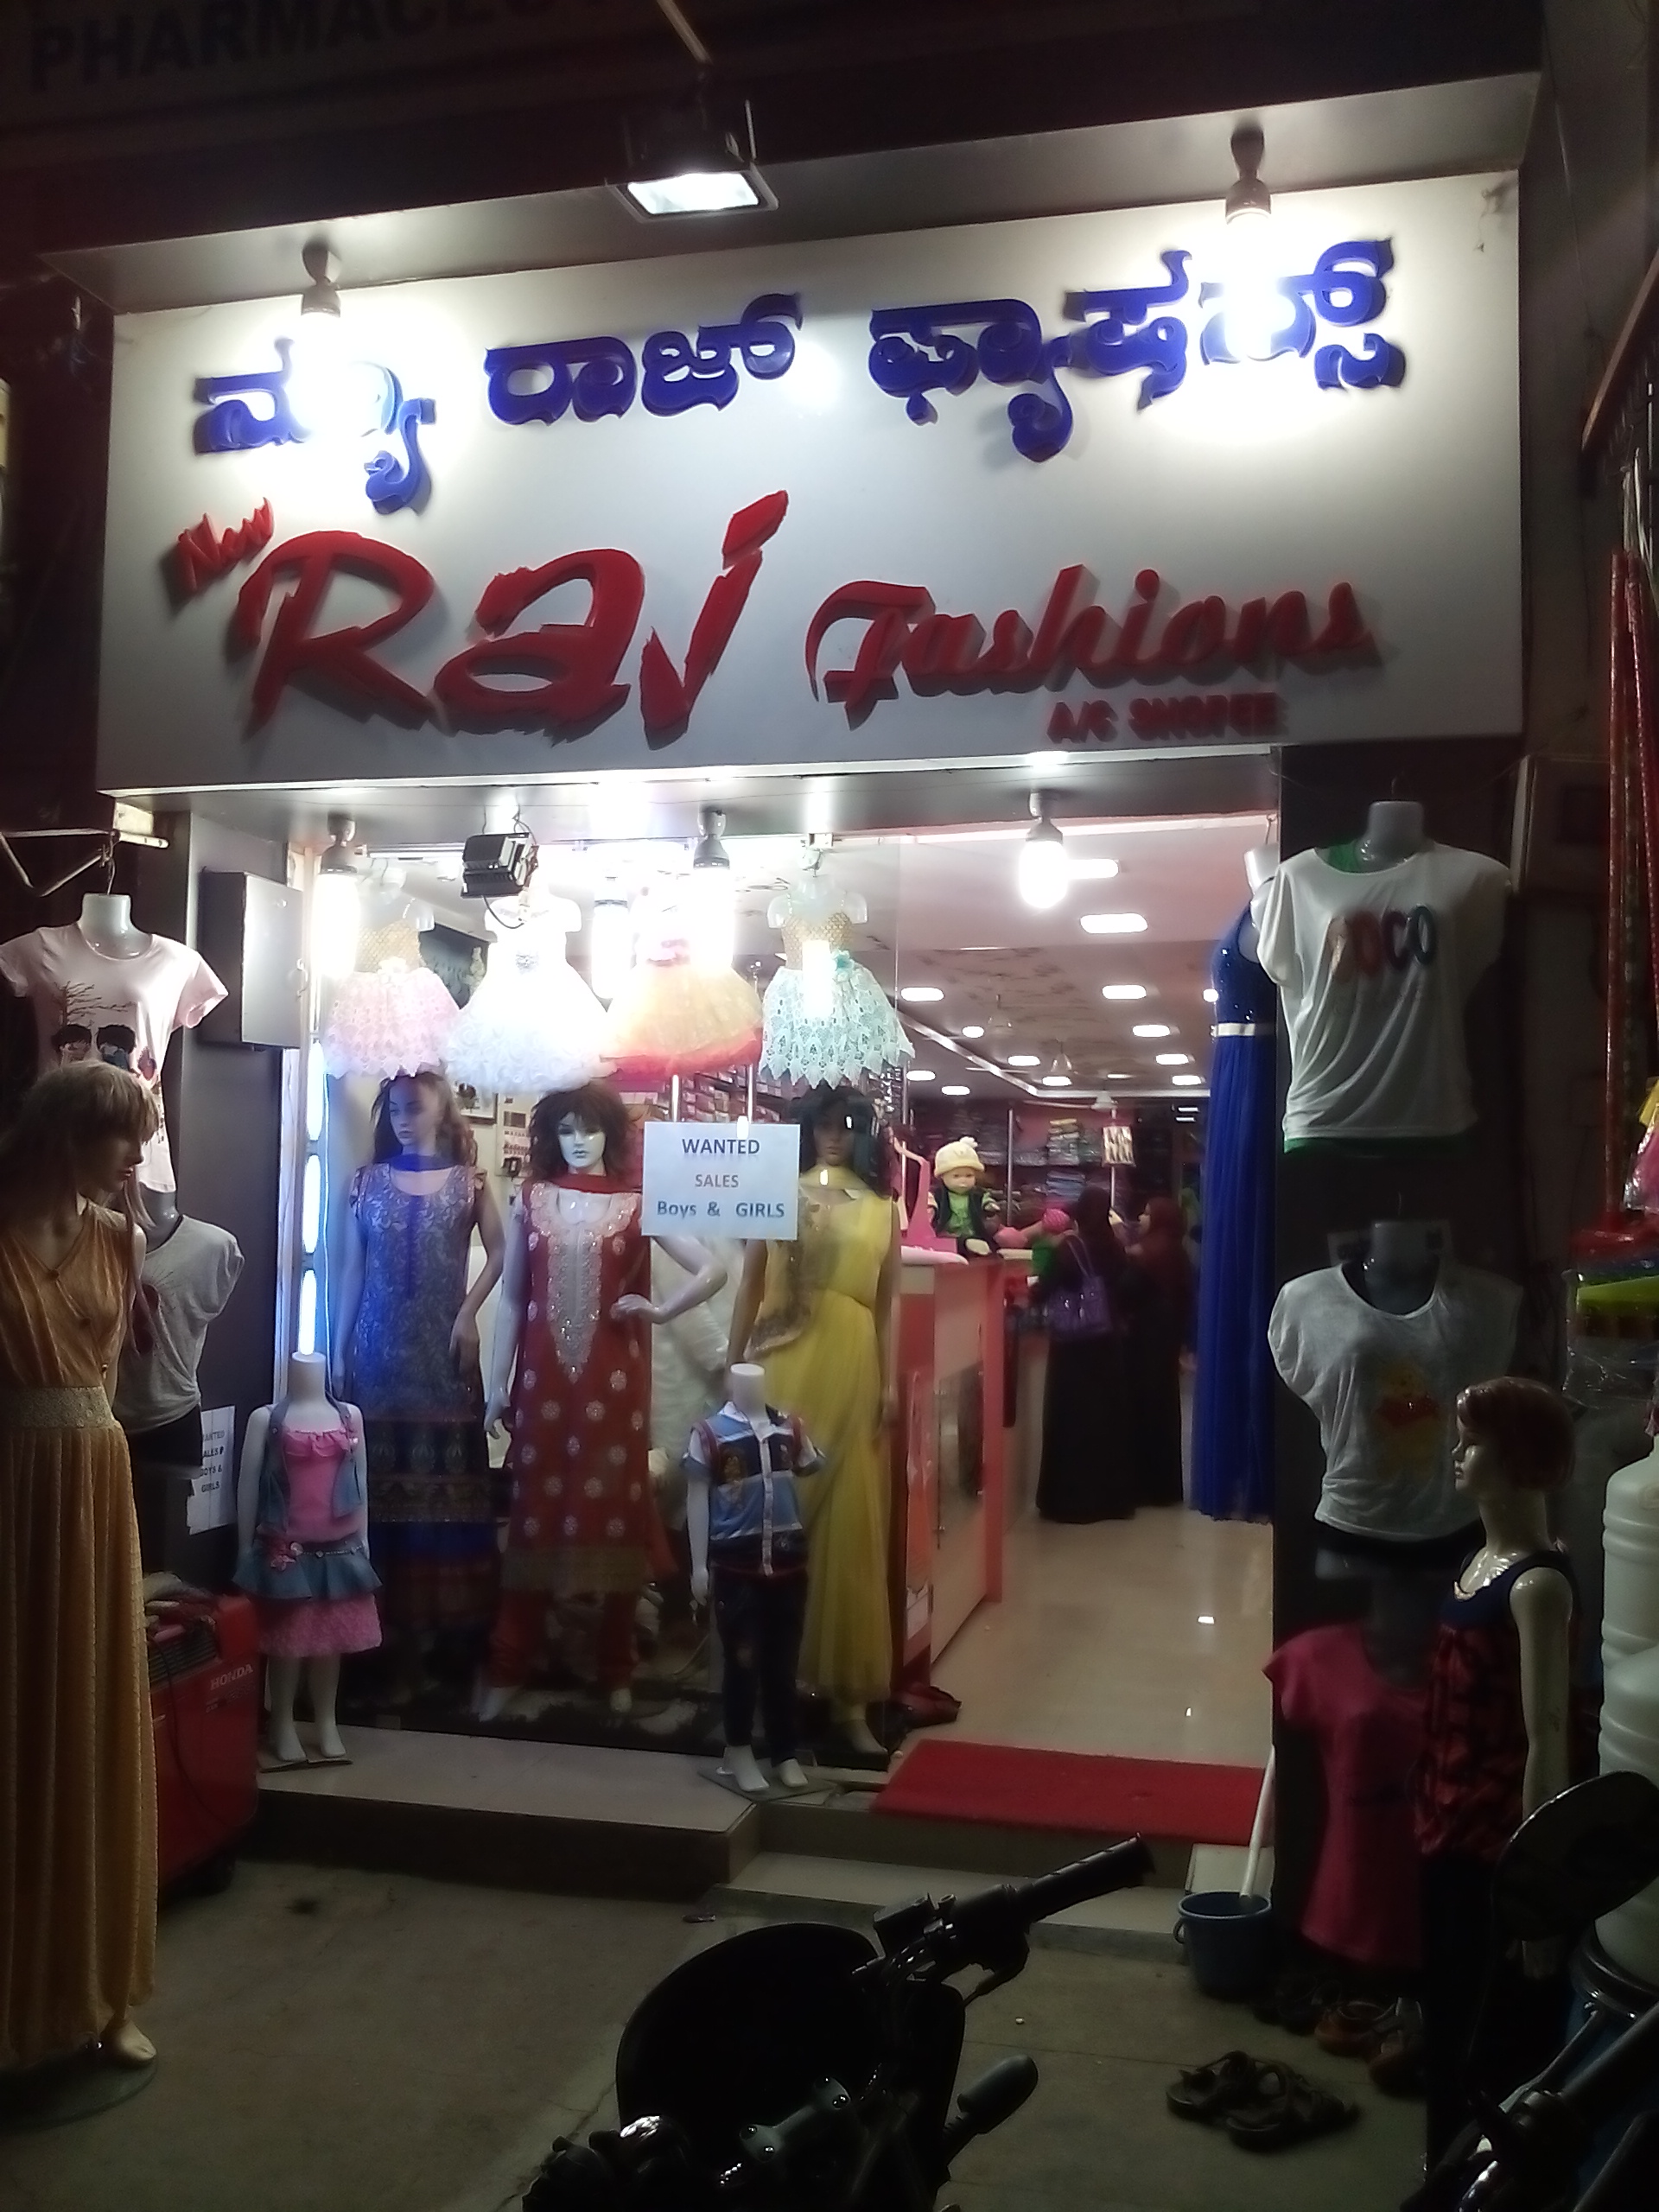 New Raj Fashions